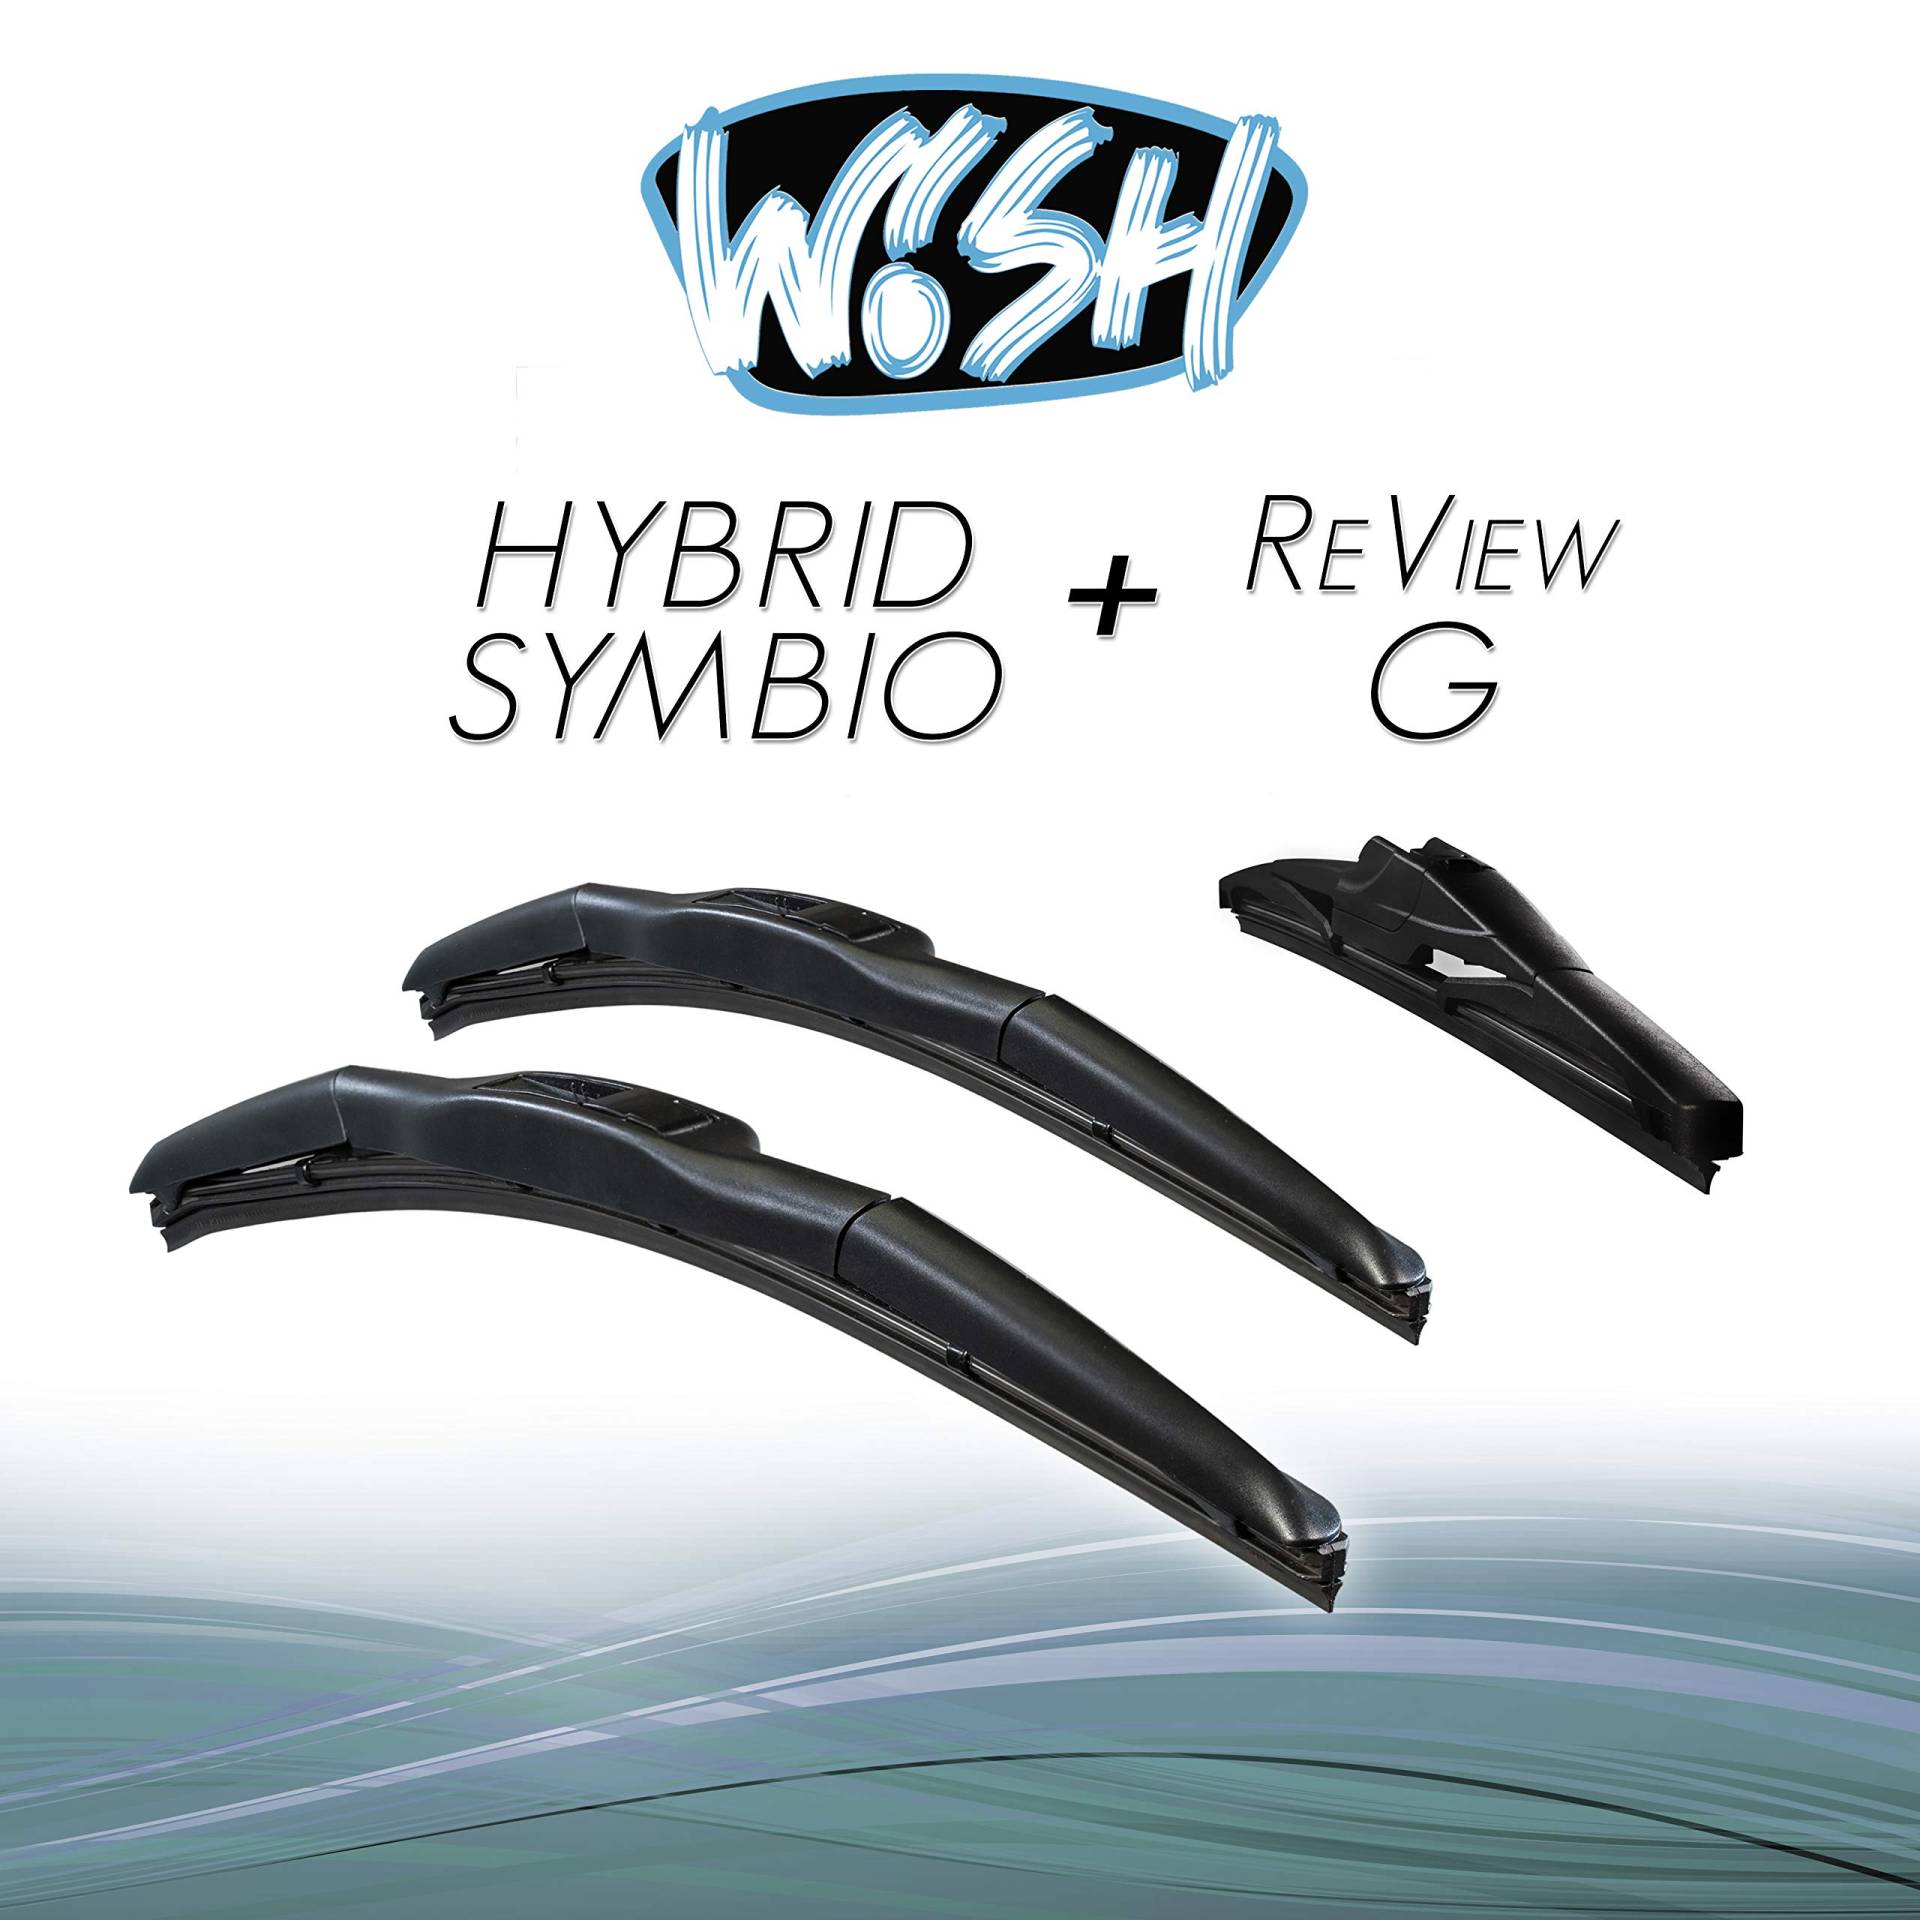 Wish® Hybrid Symbio Satz Front + Heck Scheibenwischer Länge: 22" 550mm / 14" 350mm / 12" 300mm Wischblätter Vorne und Hinten Hybrid-Scheibenwischer + Review G HS22.14.12RG von Wish